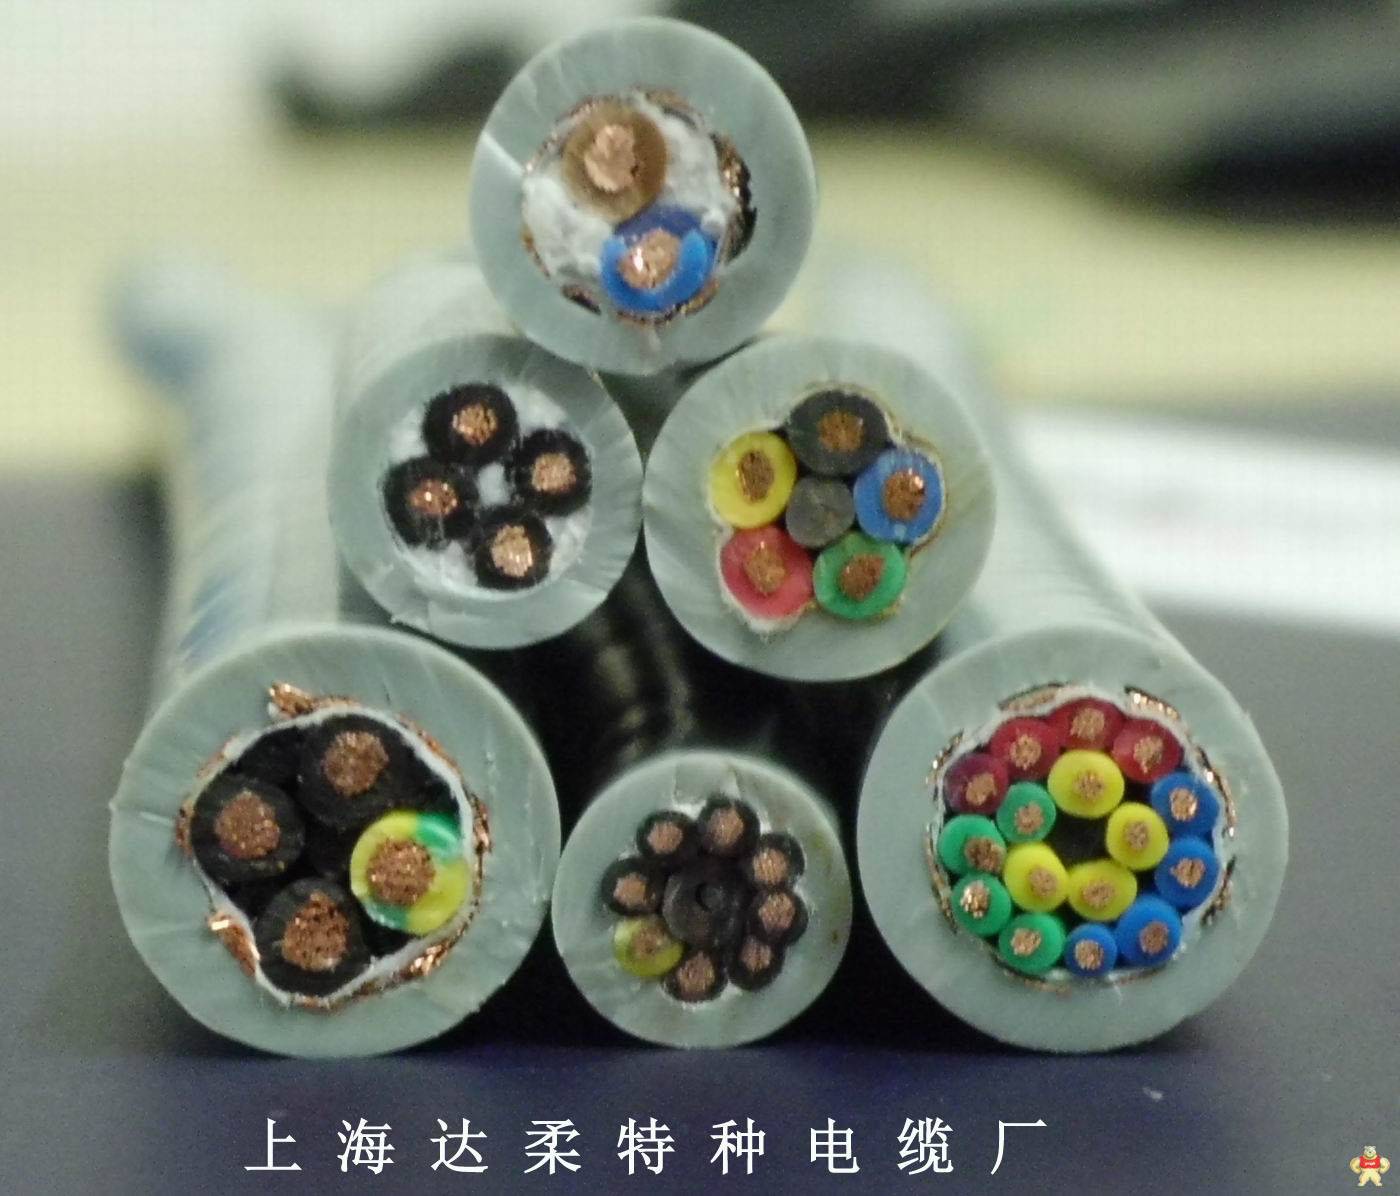 上海达柔供应耐低温电缆 耐低温电缆,抗冻电缆,-60度低温电缆,-40度低温电缆